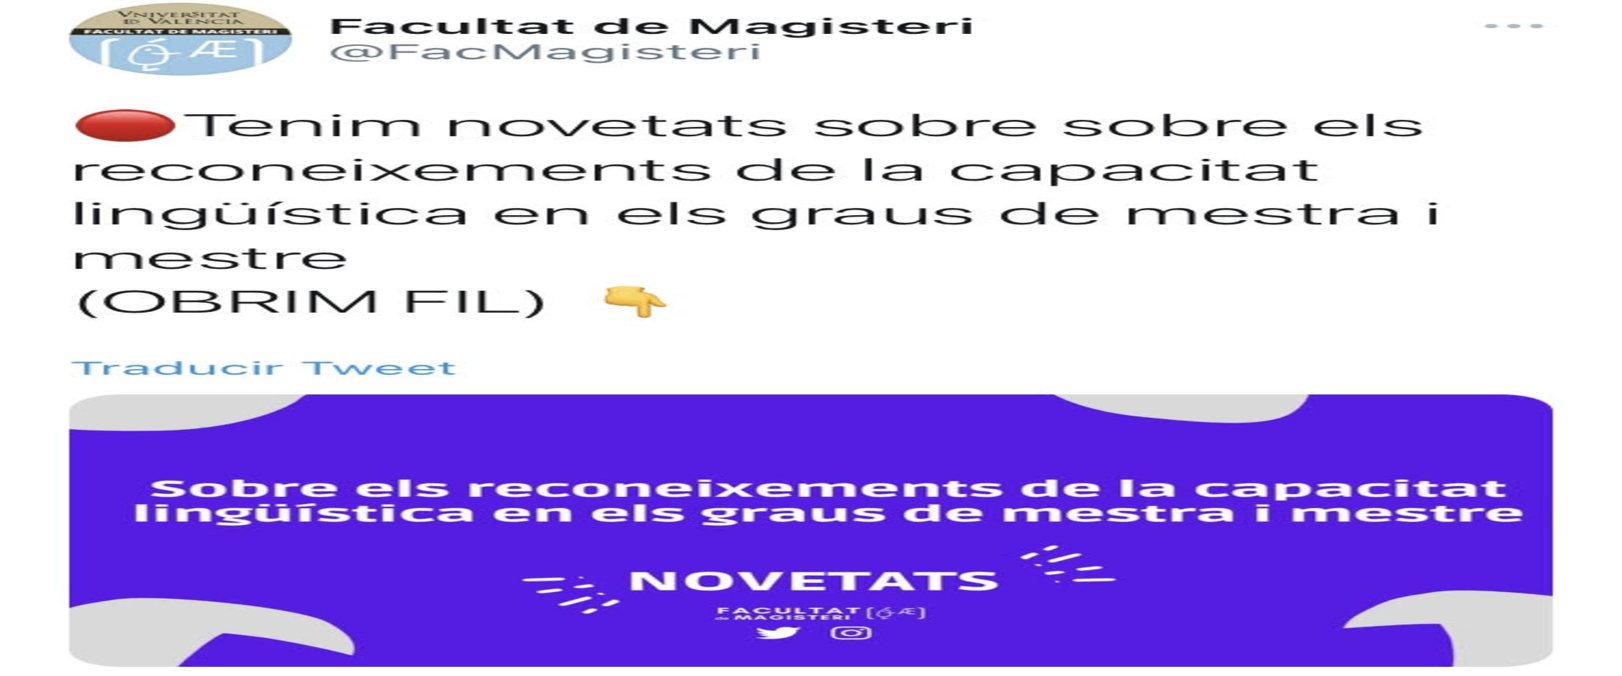 Tweet publicado por parte de Facultat de Magisteri en su cuenta oficial de Twitter que contiene la explicación de la resolución. TWITTER